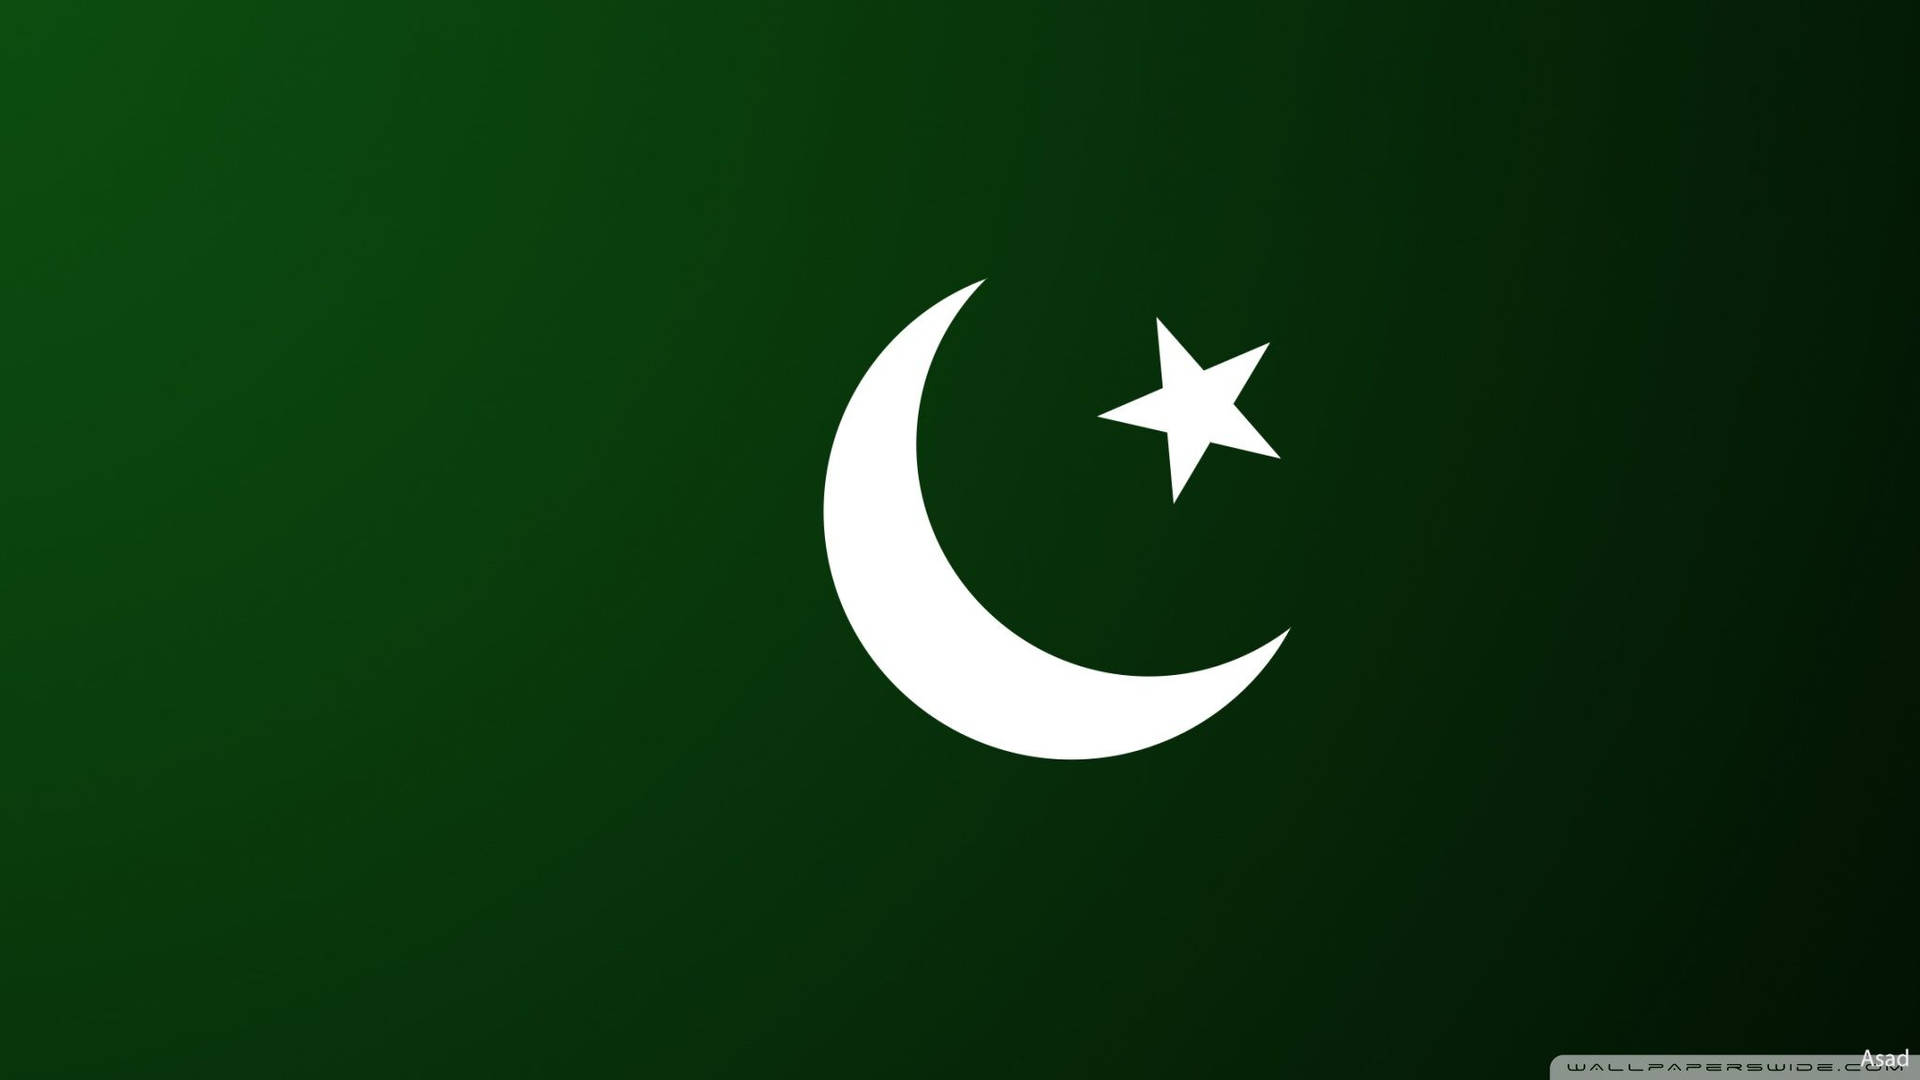 Pakistan Flag Minimalist Digital Illustration Background